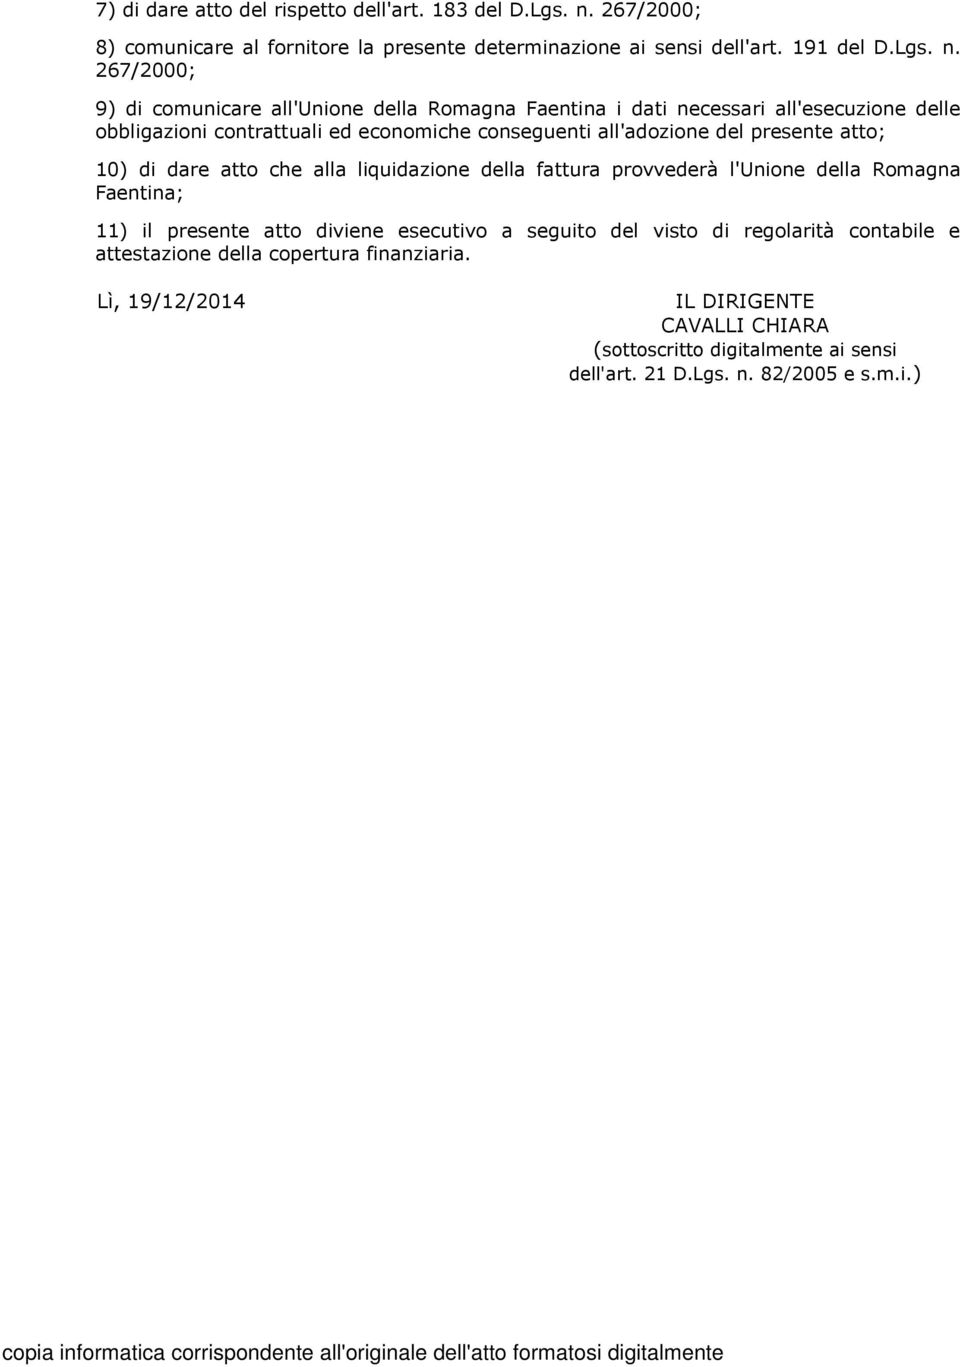 267/2000; 9) di comunicare all'unione della Romagna Faentina i dati necessari all'esecuzione delle obbligazioni contrattuali ed economiche conseguenti all'adozione del